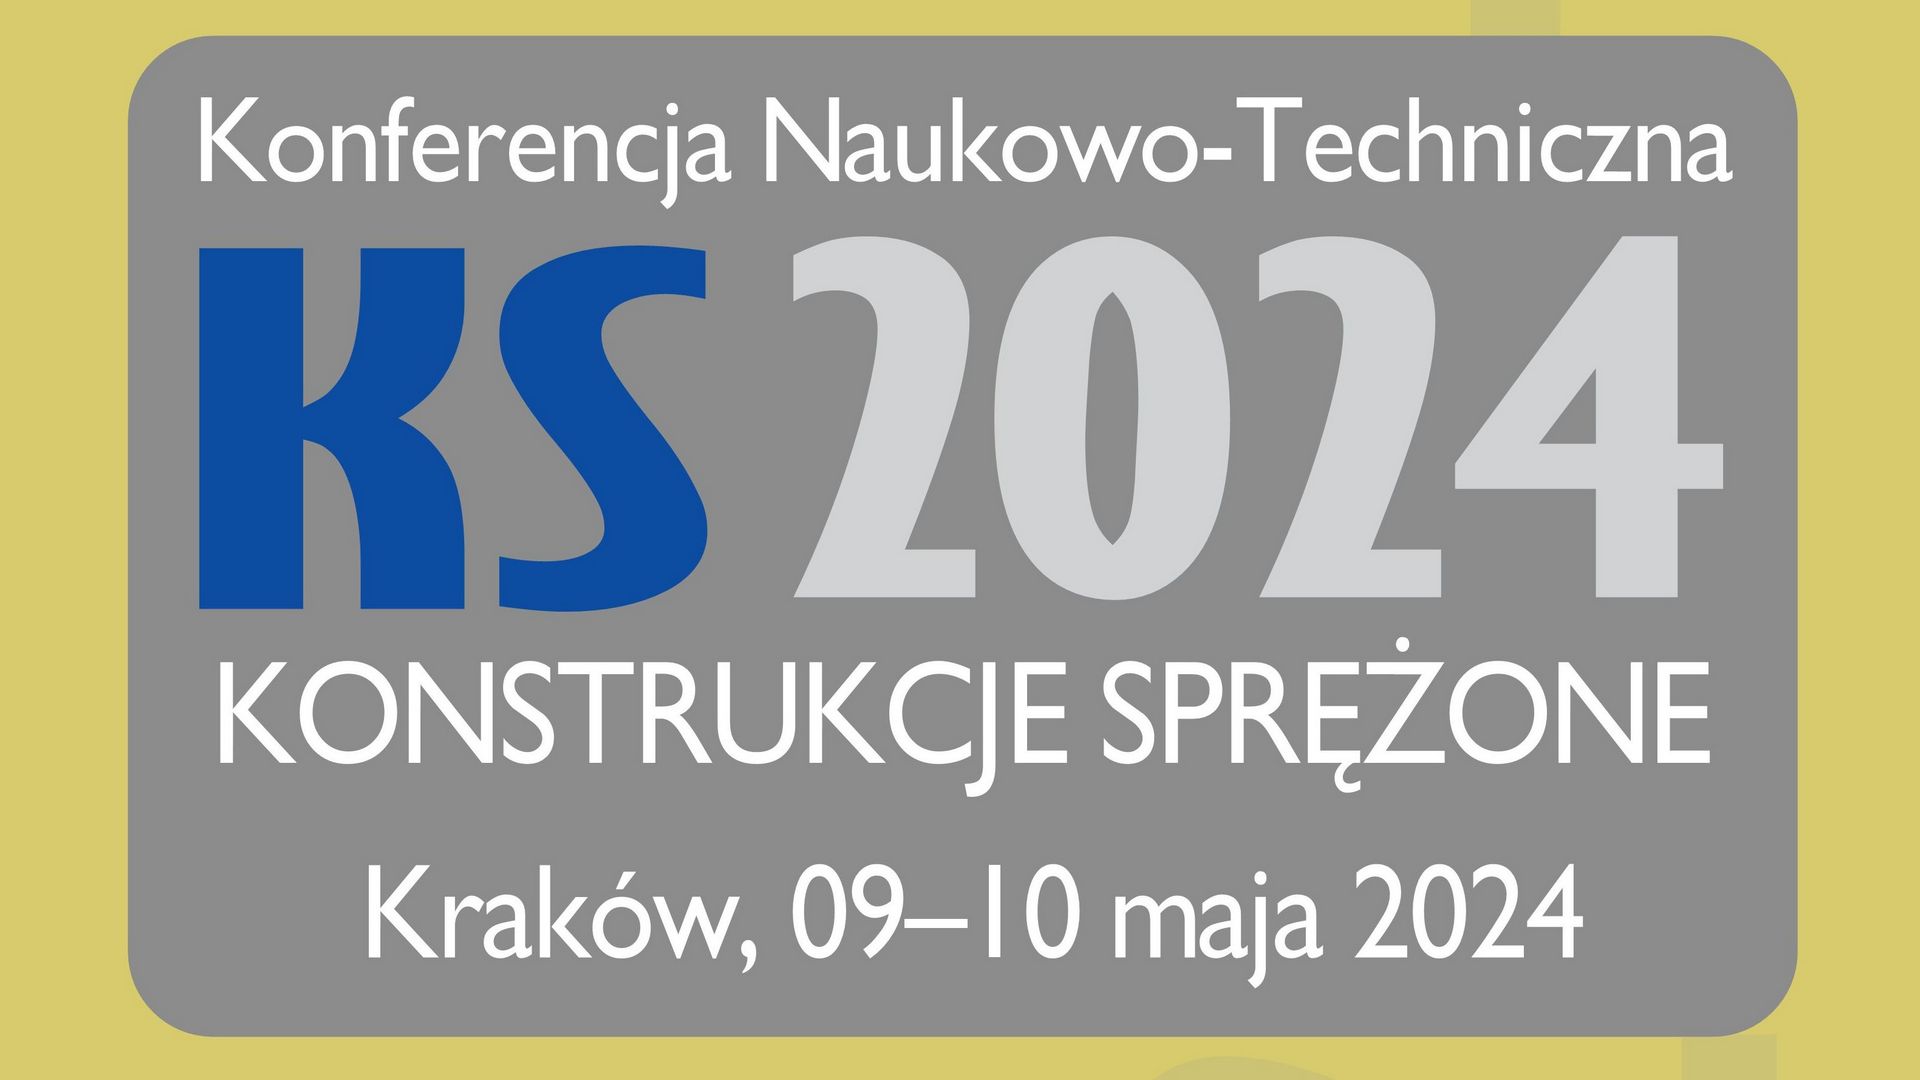 Konferencja Naukowo-Techniczna KONSTRUKCJE SPRĘŻONE Kraków, 09-10 maja 2024